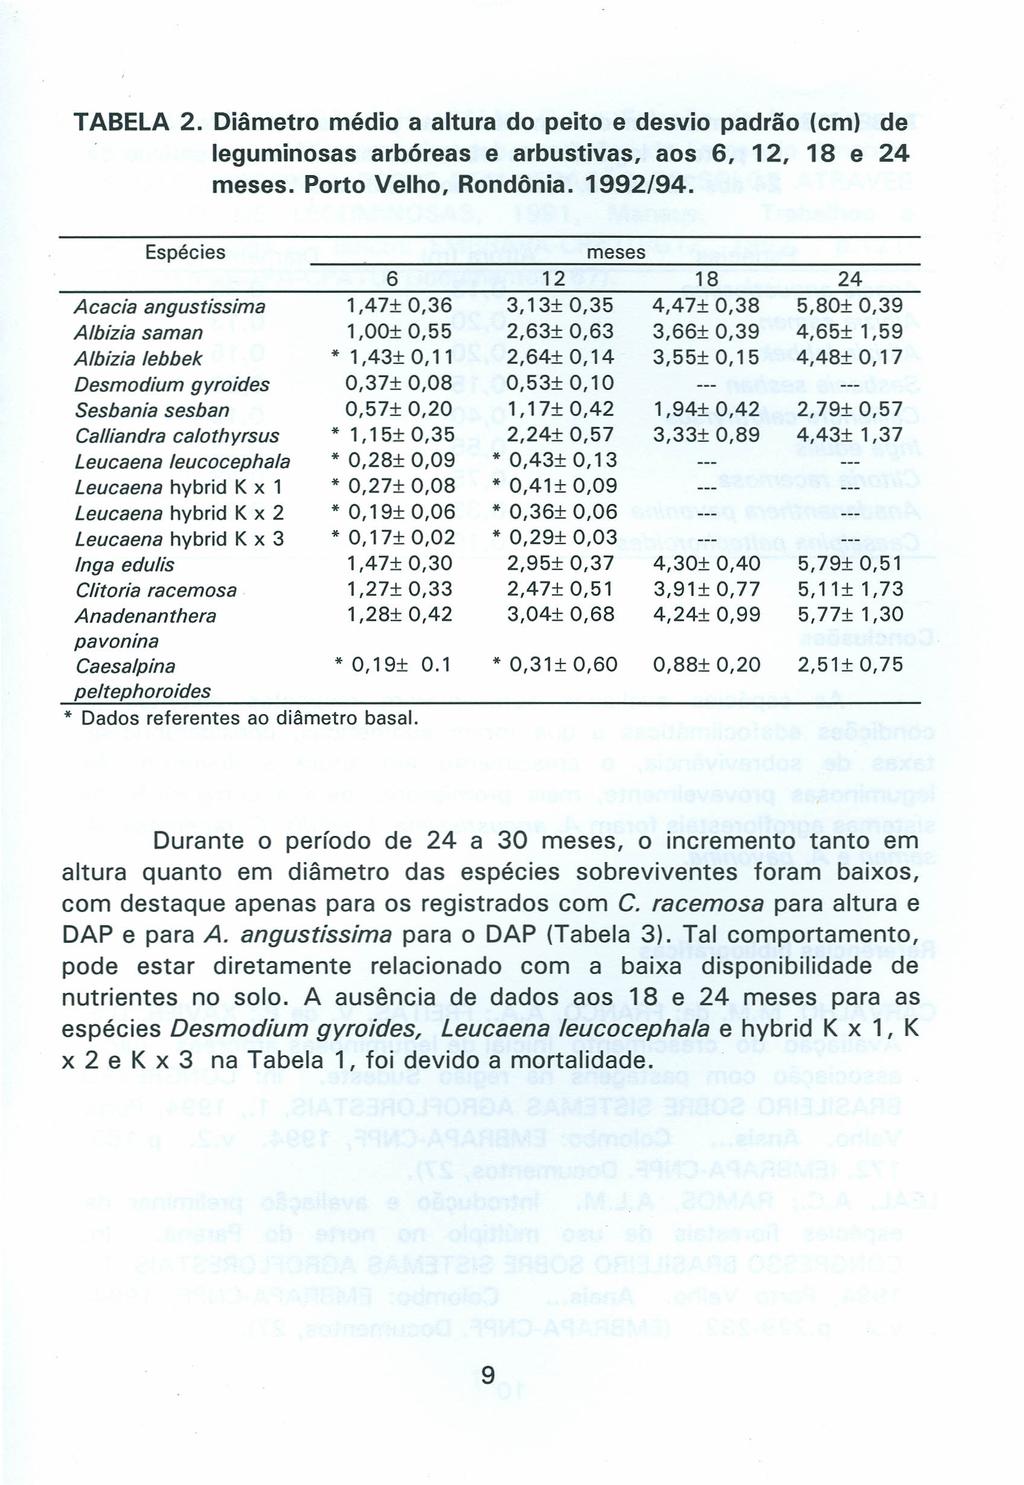 TABELA 2. Diâmetro médio a altura do peito e desvio padrão (em) de leguminosas arbóreas e arbustivas, aos 6, 12, 18 e 24 meses. Porto Velho, Rondônia. 1992/94.